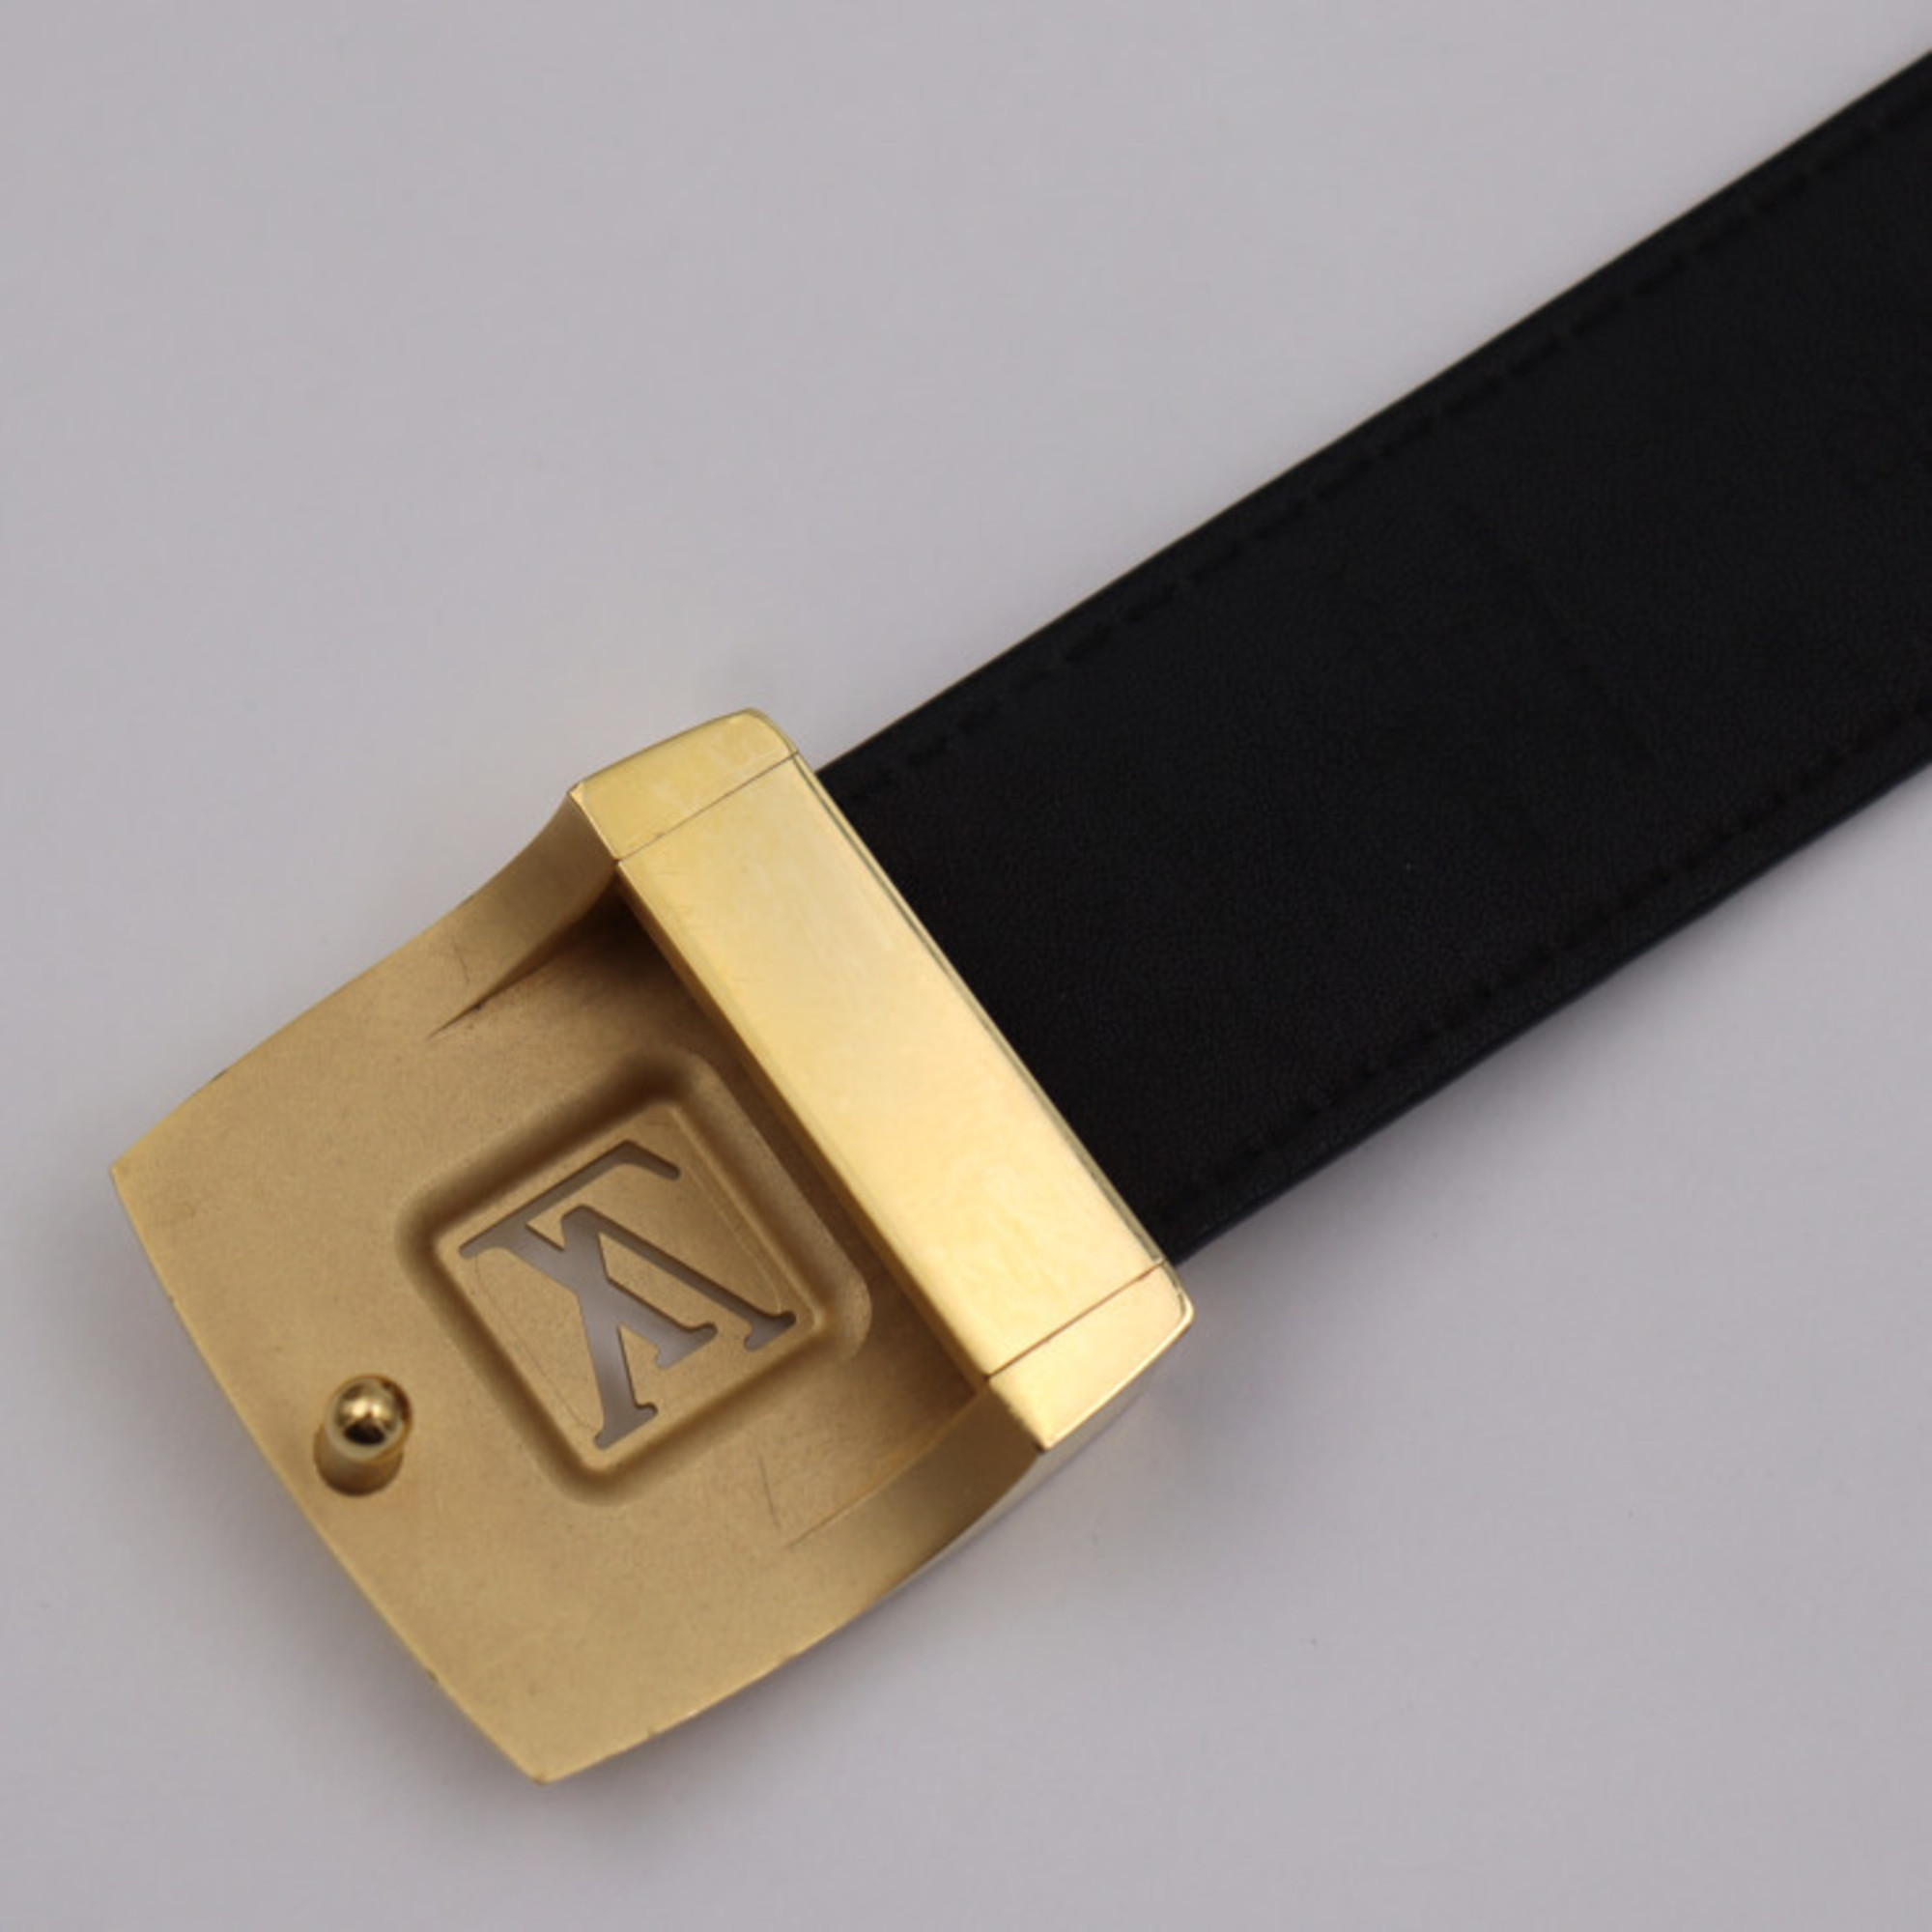 LOUIS VUITTON Louis Vuitton Sun Tulle LV cut belt M6890 notation size 80/32 monogram multicolor Noir black gold metal fittings